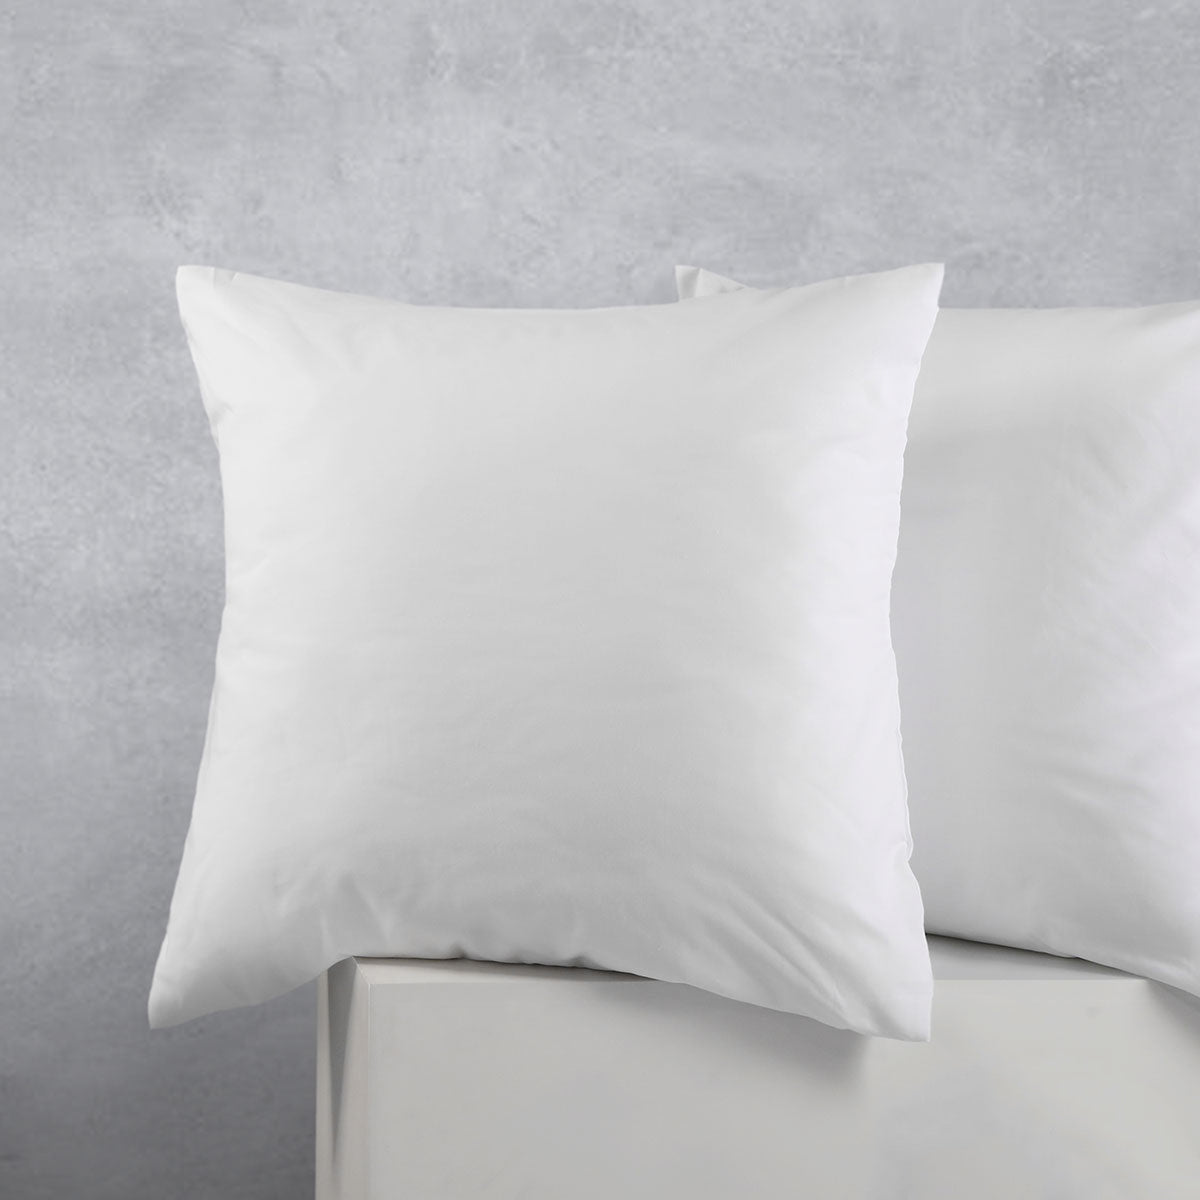 Accessorize Pair of Cotton Polyester European Pillowcases White